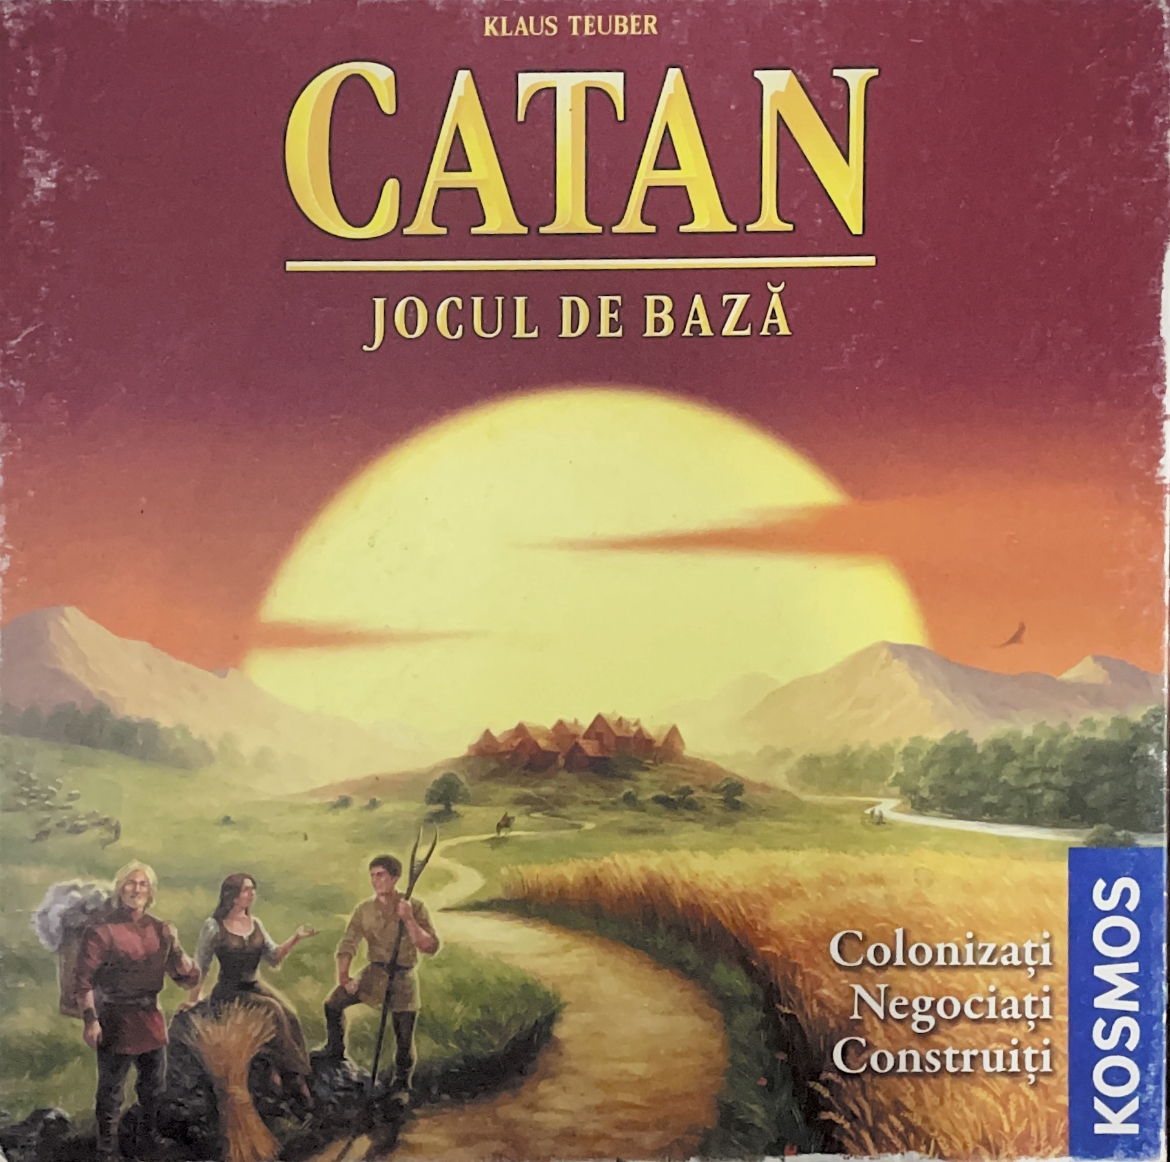 Board Games: Catan; Azul; Activity; Carcassonne și multe altele.